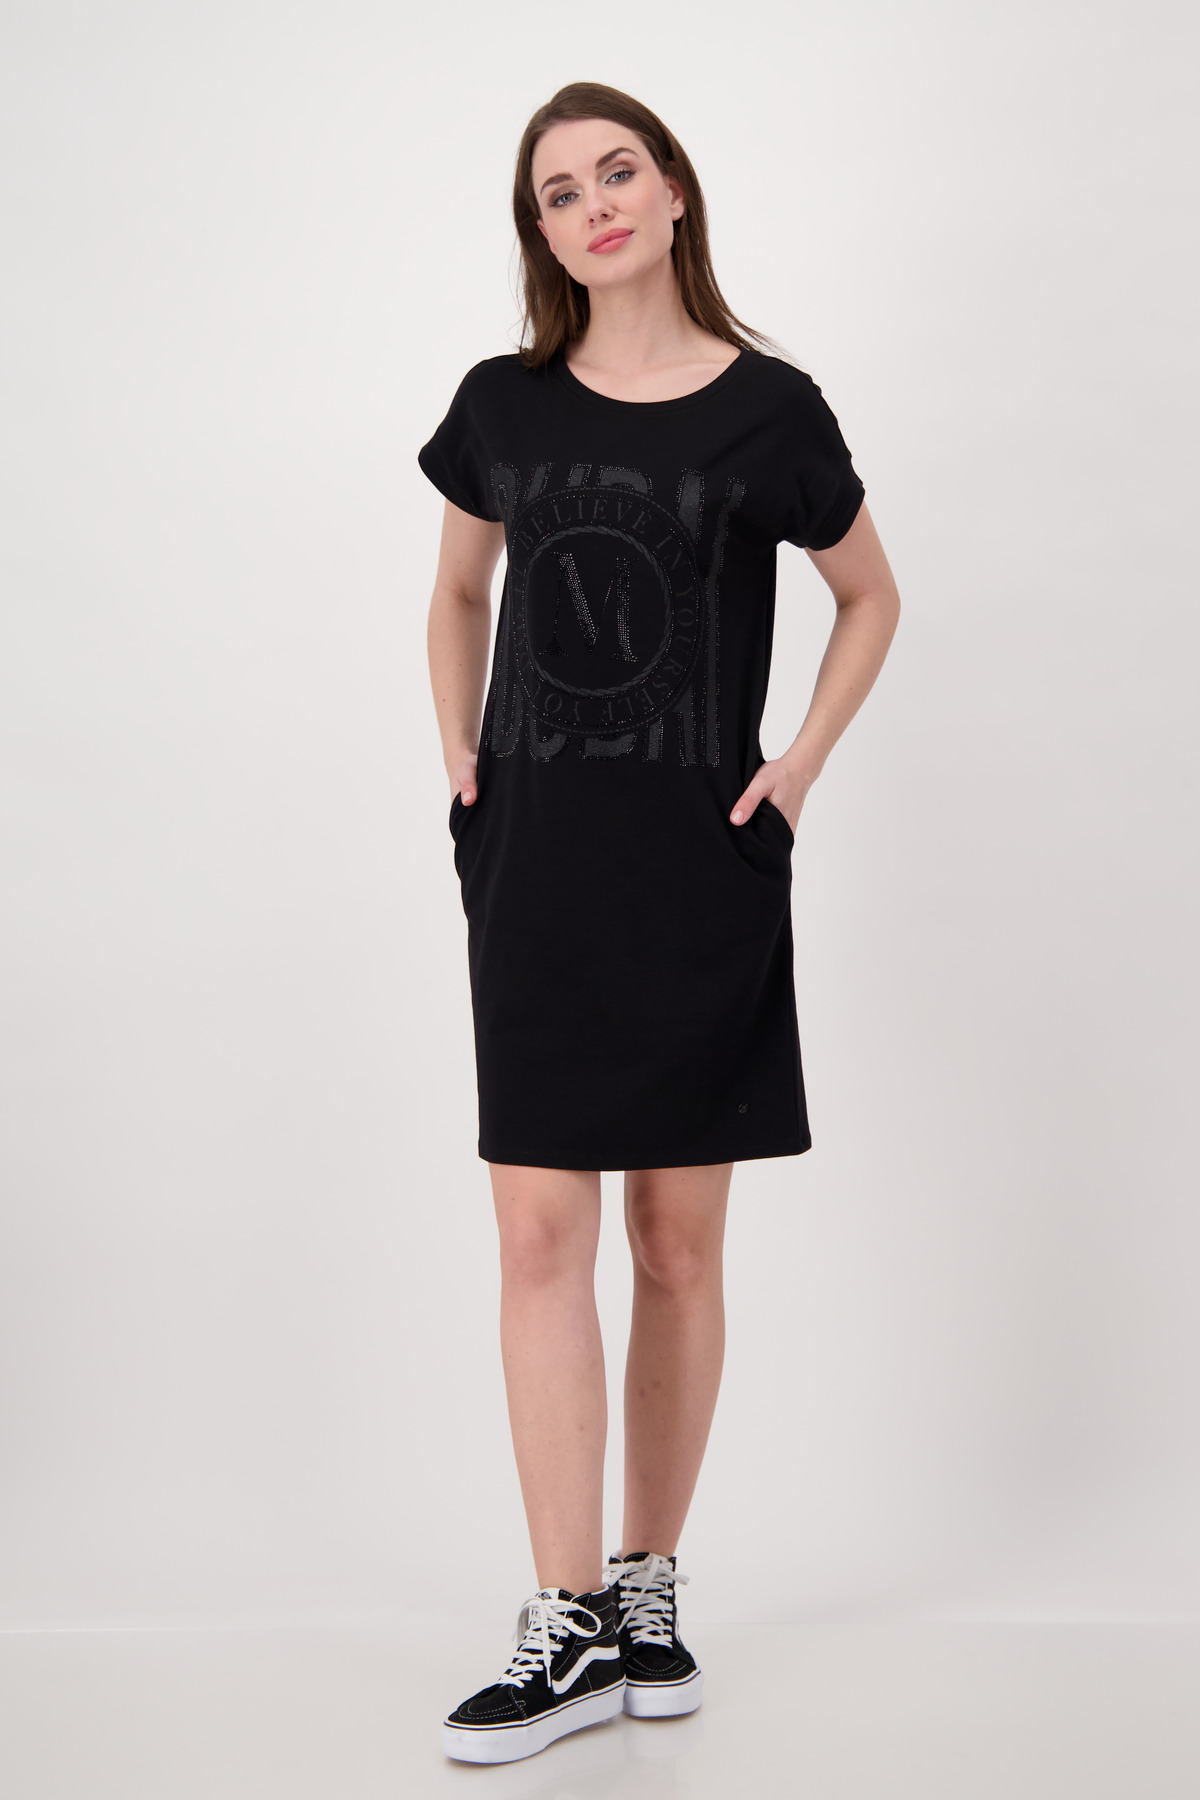 Monari Kleid, schwarz - Hartmann Shop Mode